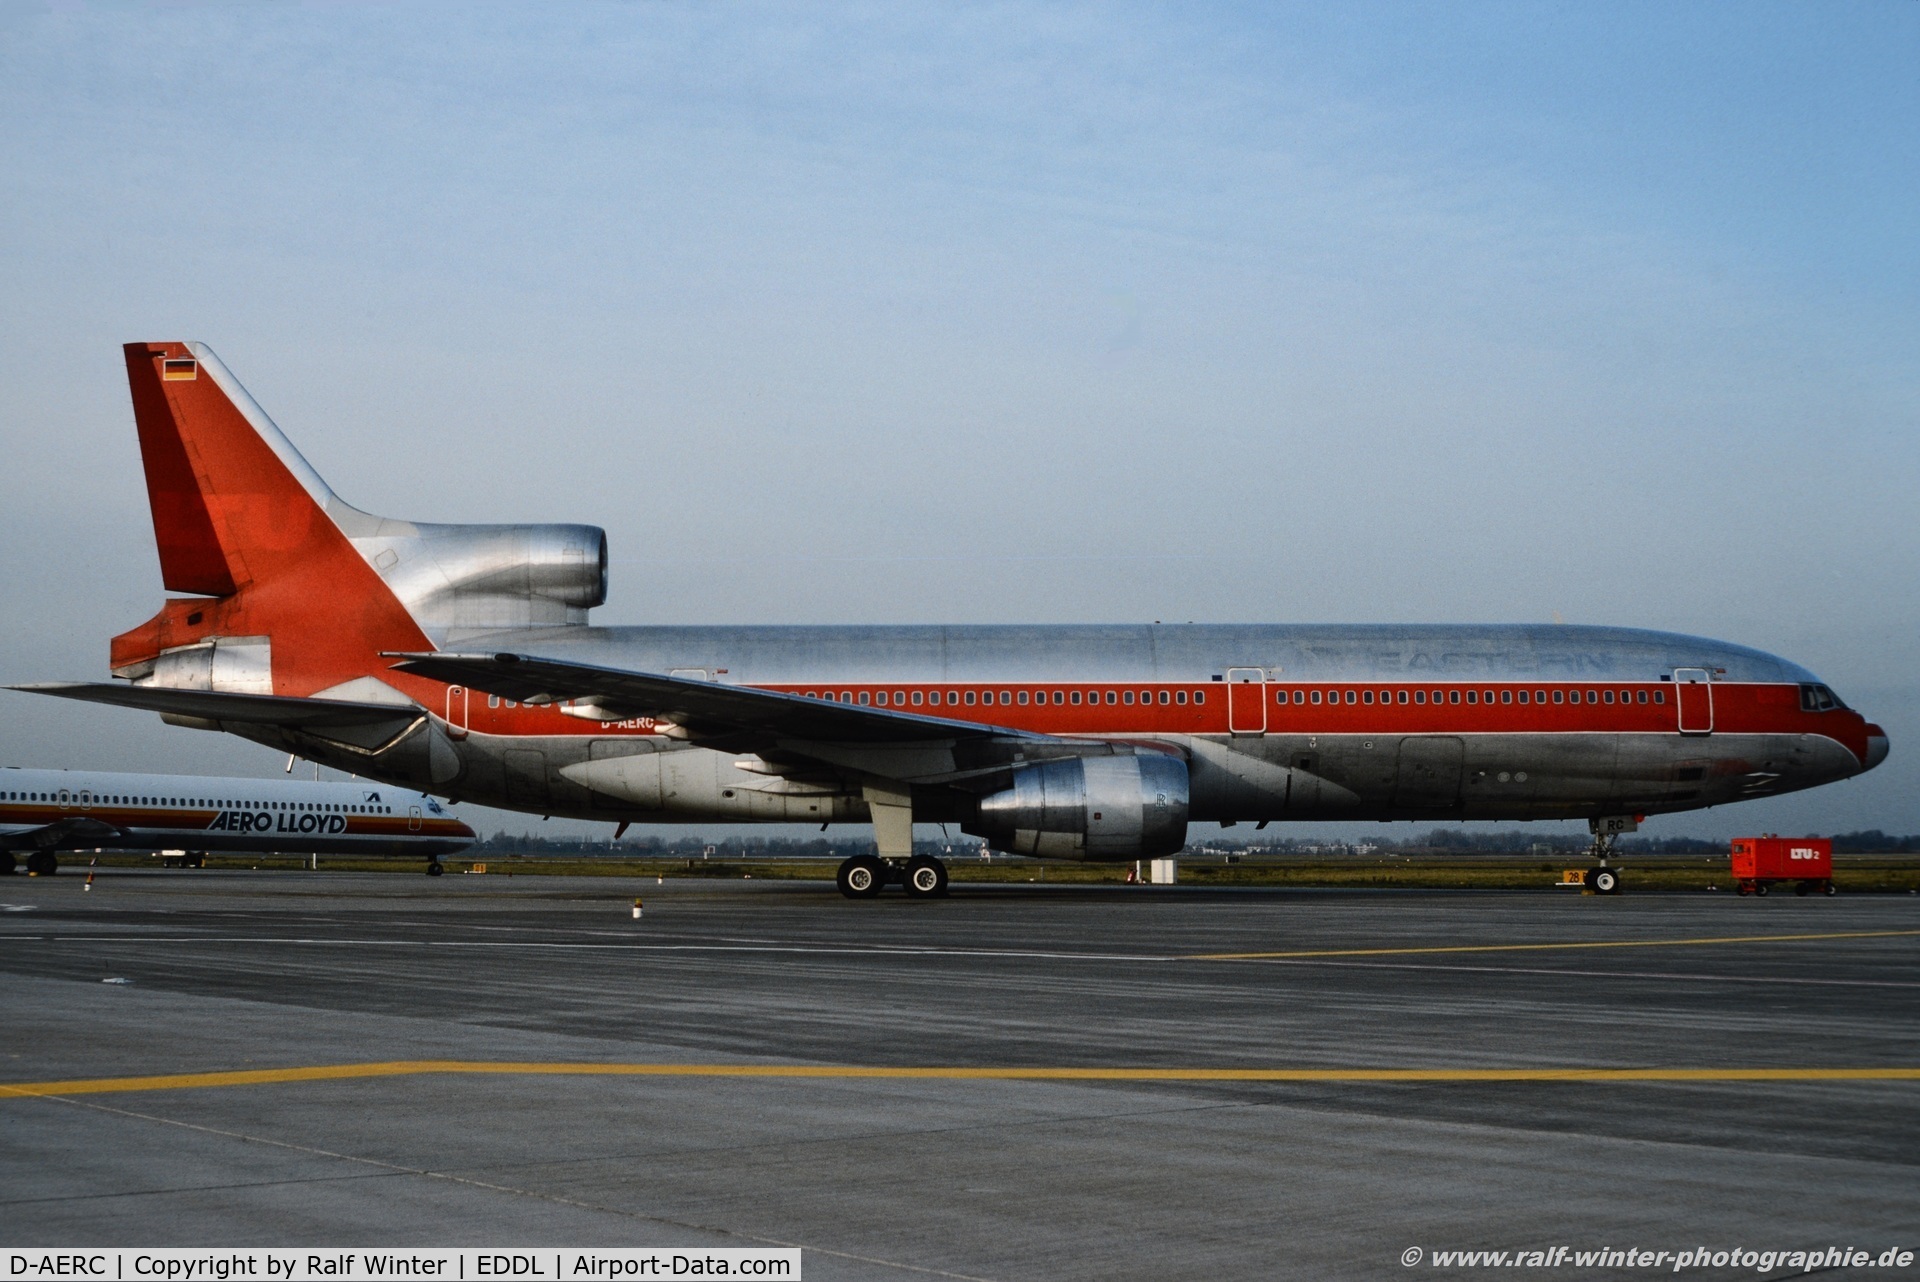 D-AERC, 1974 Lockheed L-1011-385-1 TriStar C/N 193A-1085, Lockheed L-1011-385-1 TriStar - LTU International Airways .out of Colour - 1085 - D-AERC - 11.1992